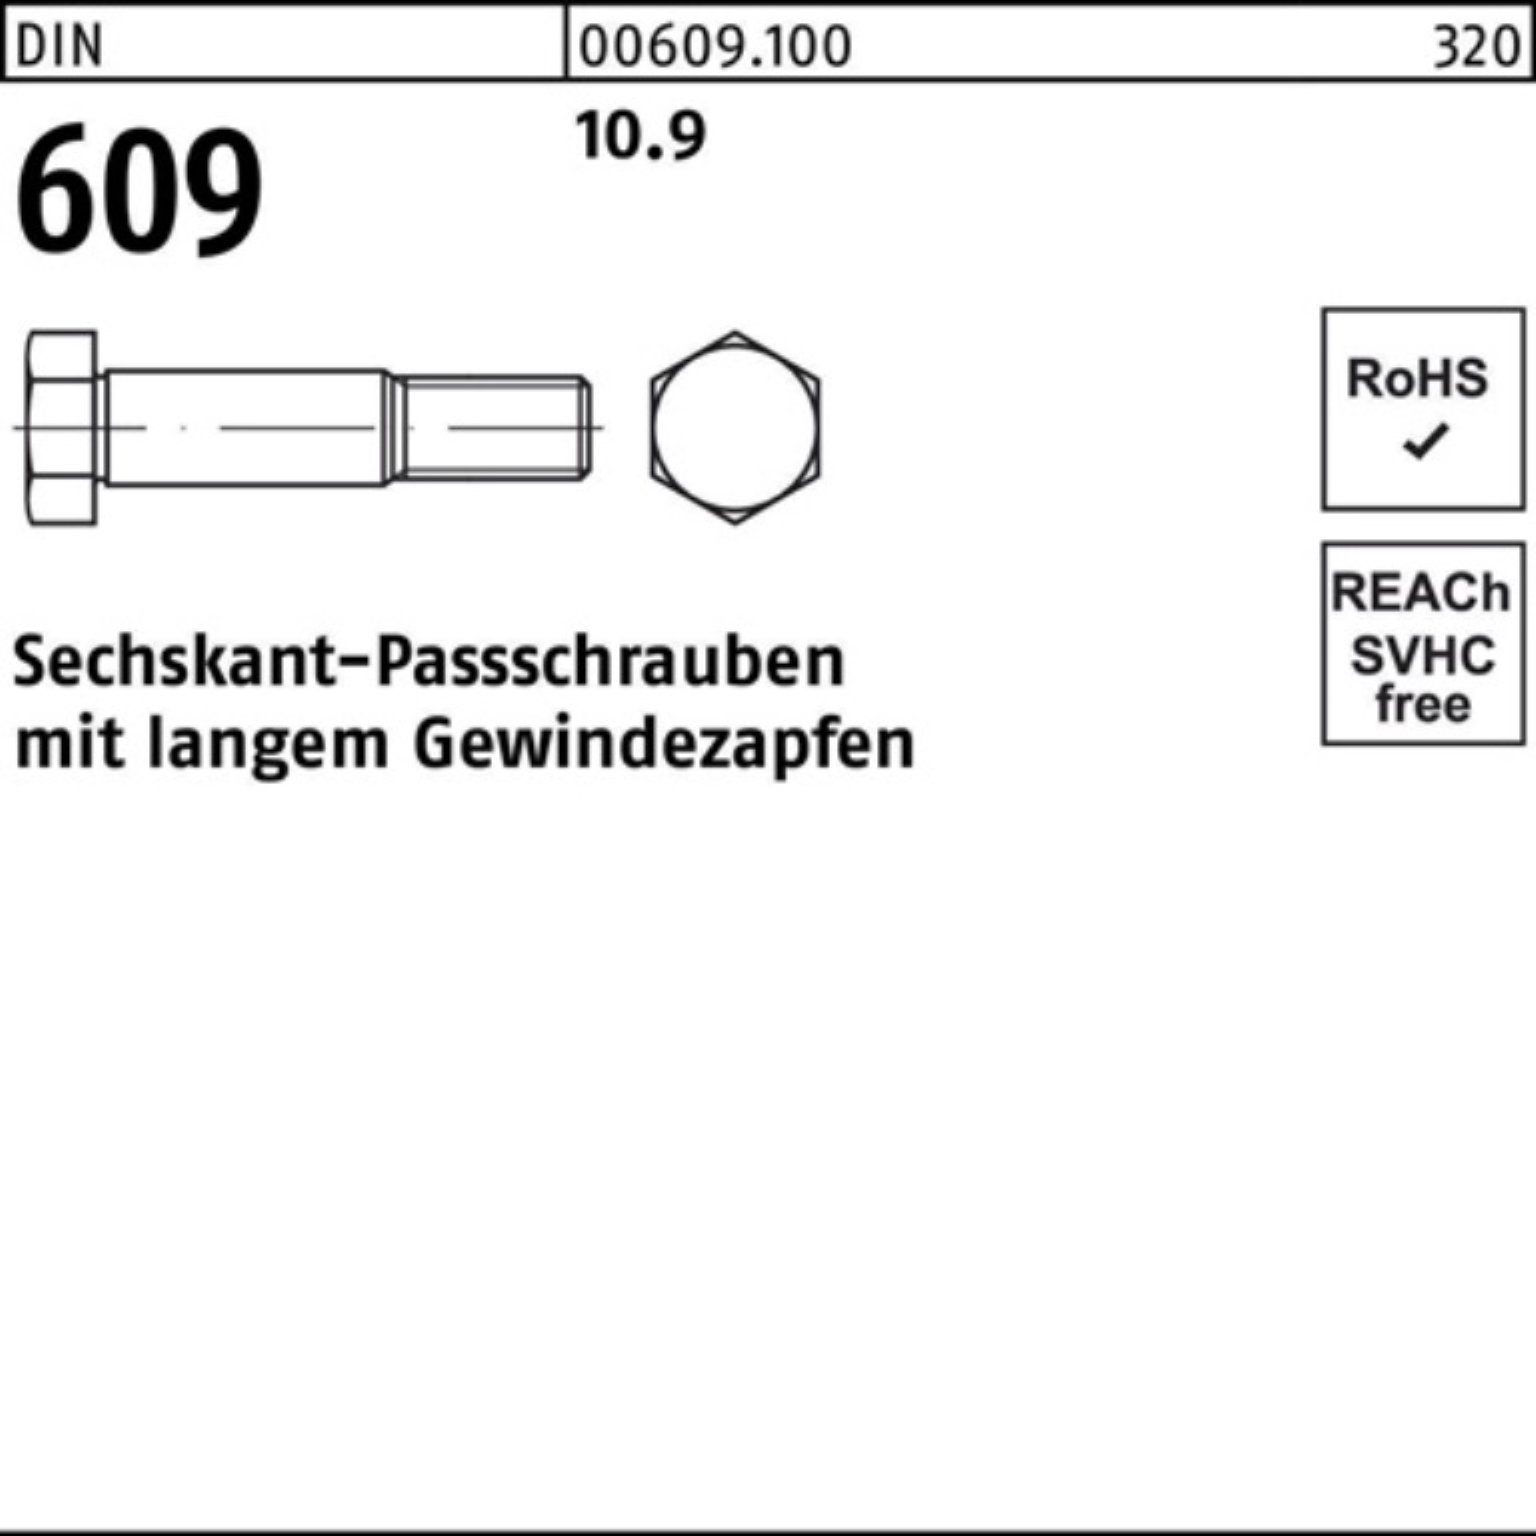 Schraube Pack Reyher Gewindezapfen Sechskantpassschraube M24x DIN 100er 110 609 langem